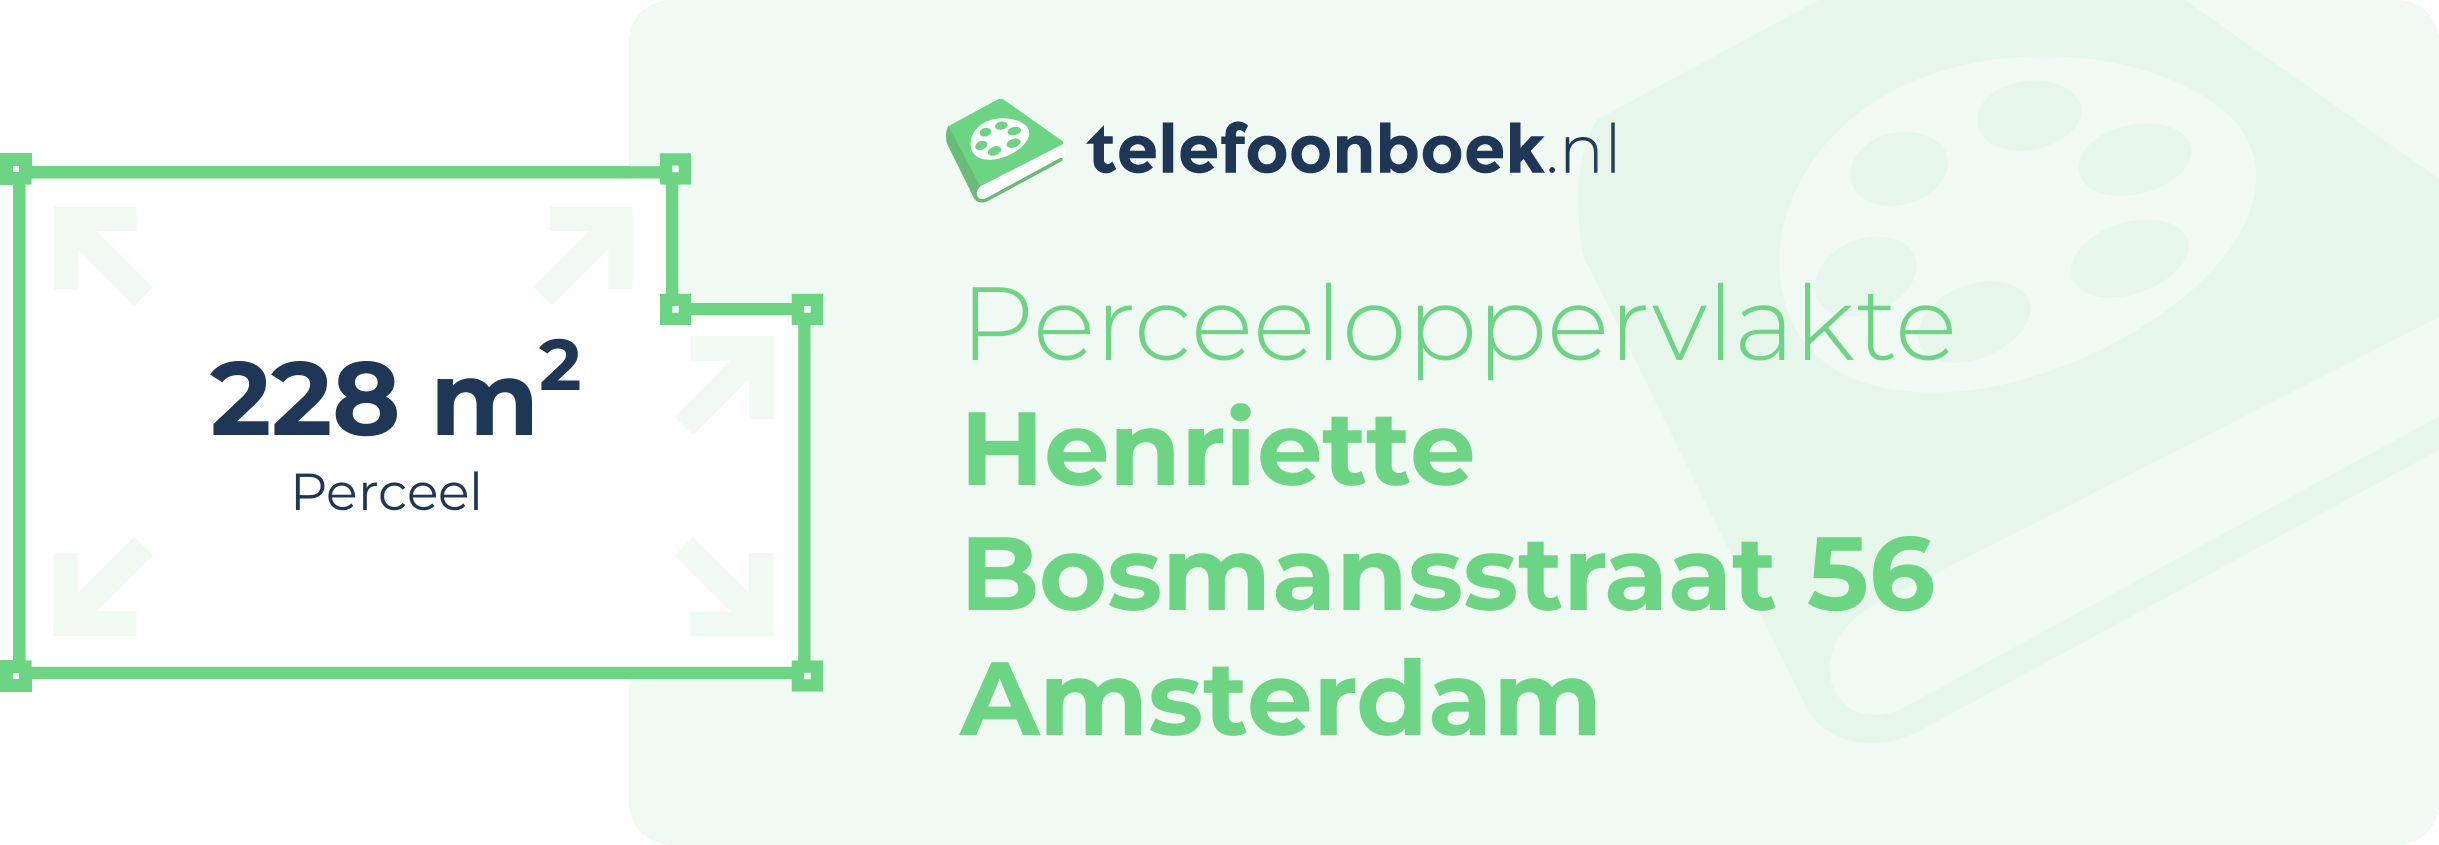 Perceeloppervlakte Henriette Bosmansstraat 56 Amsterdam